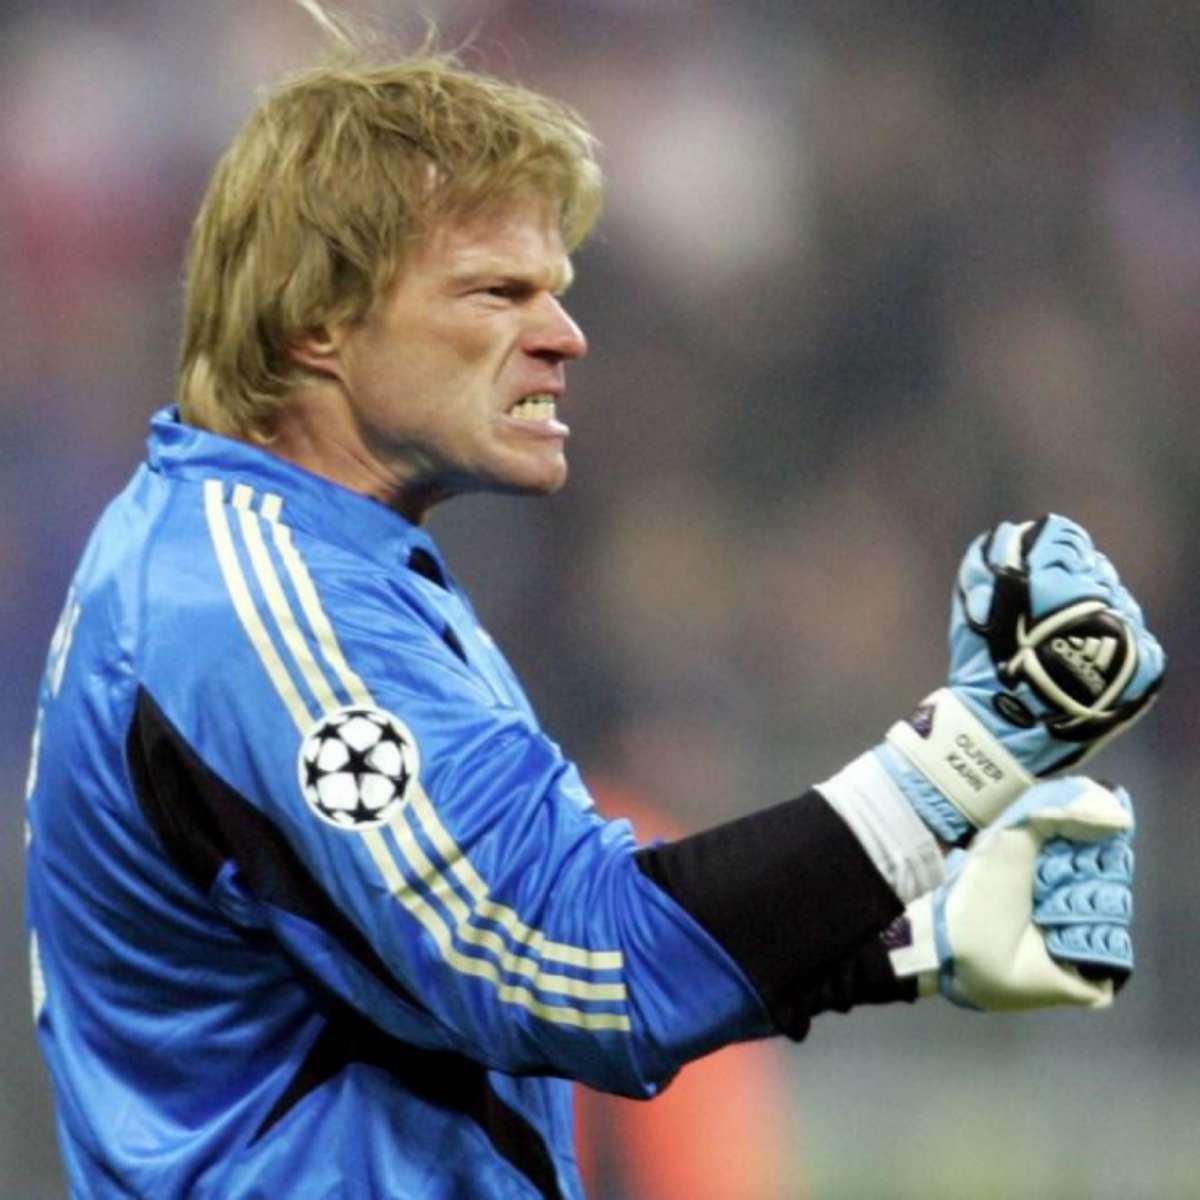 Oliver Kahn recusa convite para ser diretor esportivo do Schalke 04